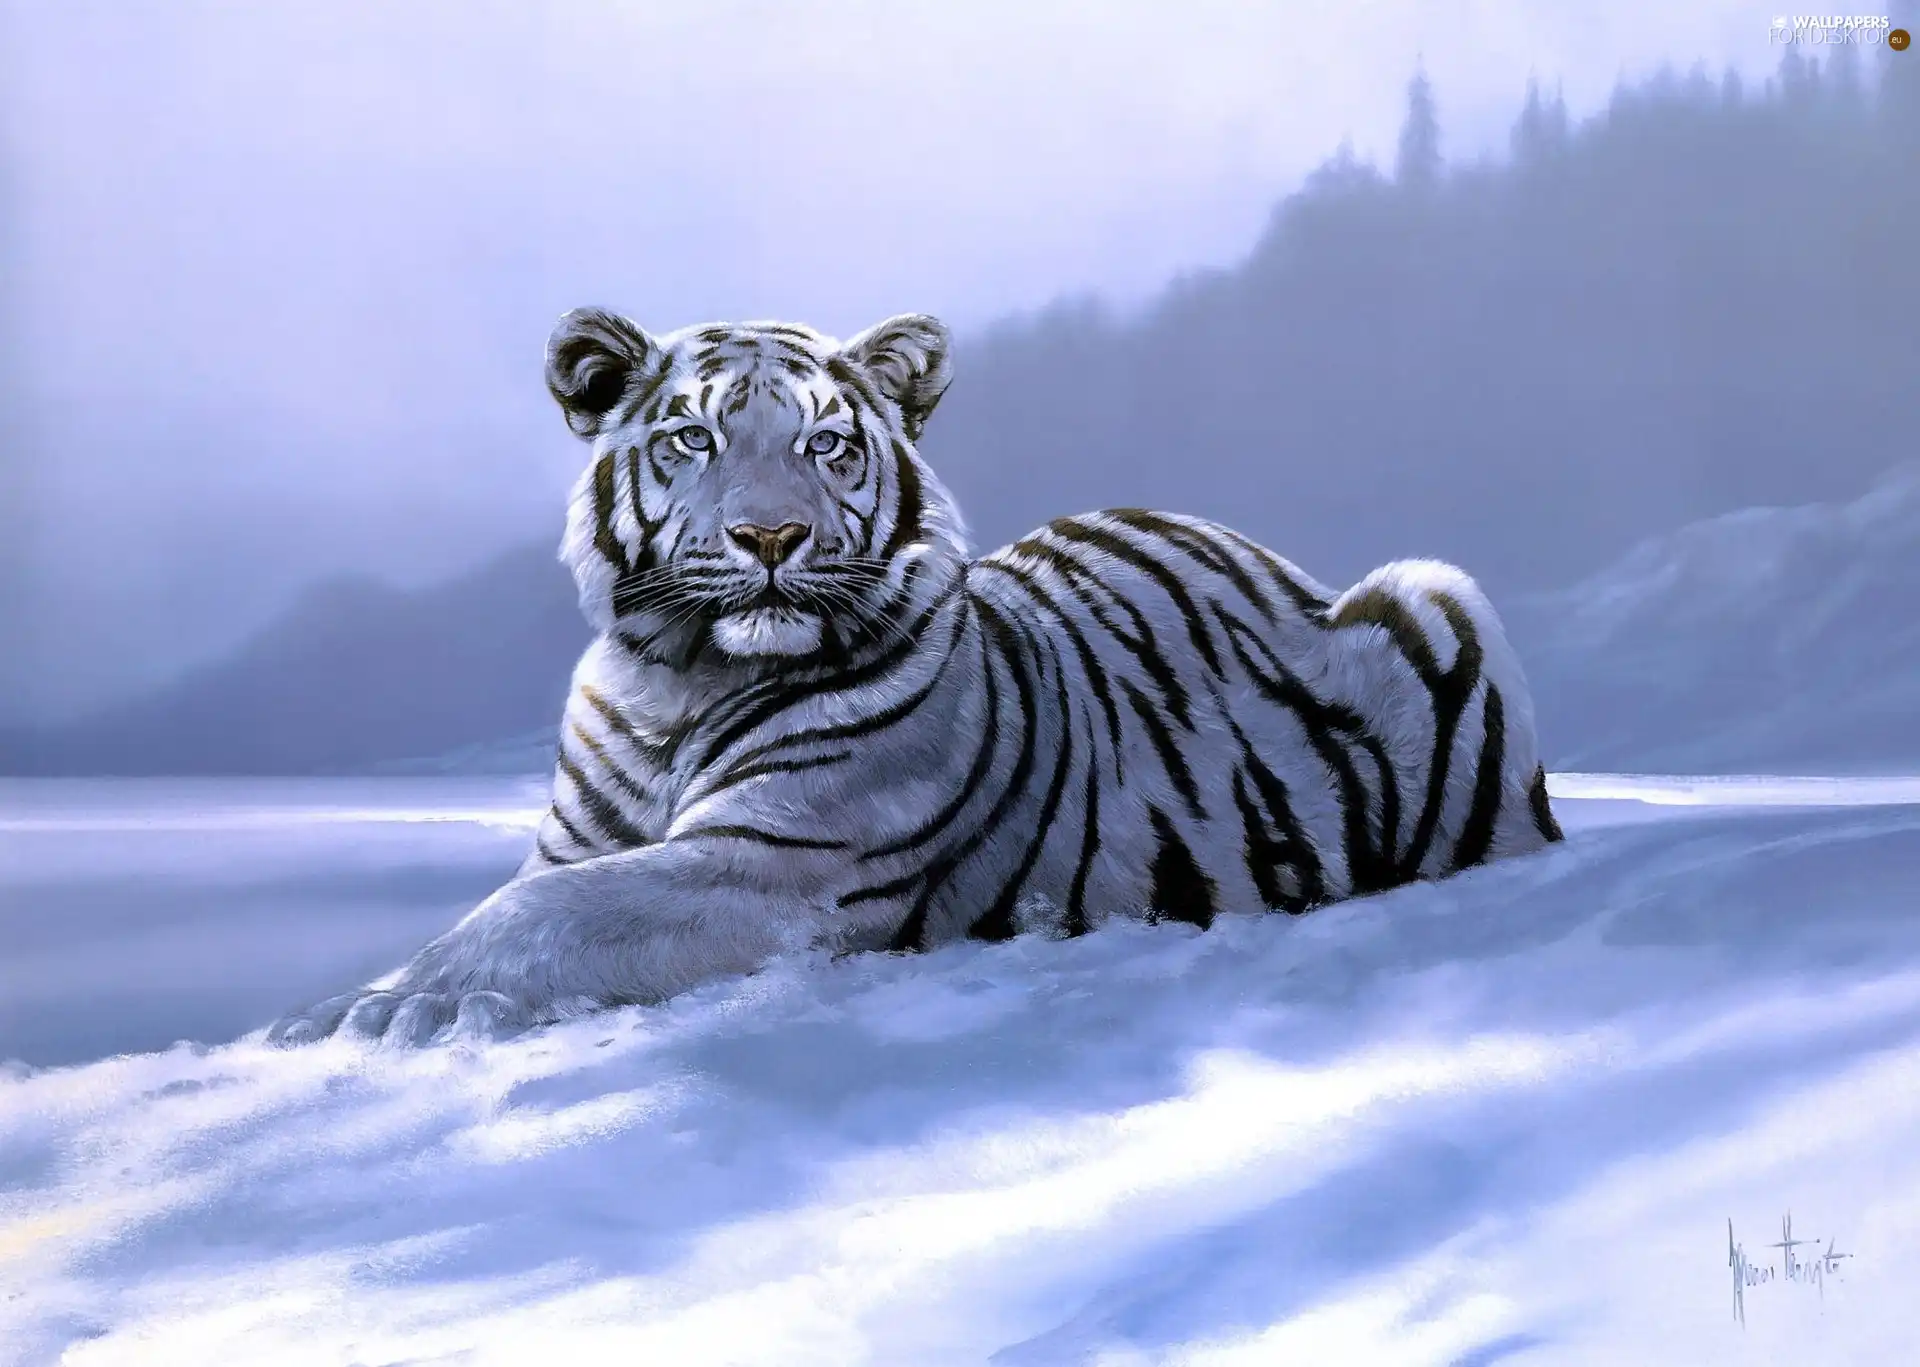 winter, tiger, picture, White